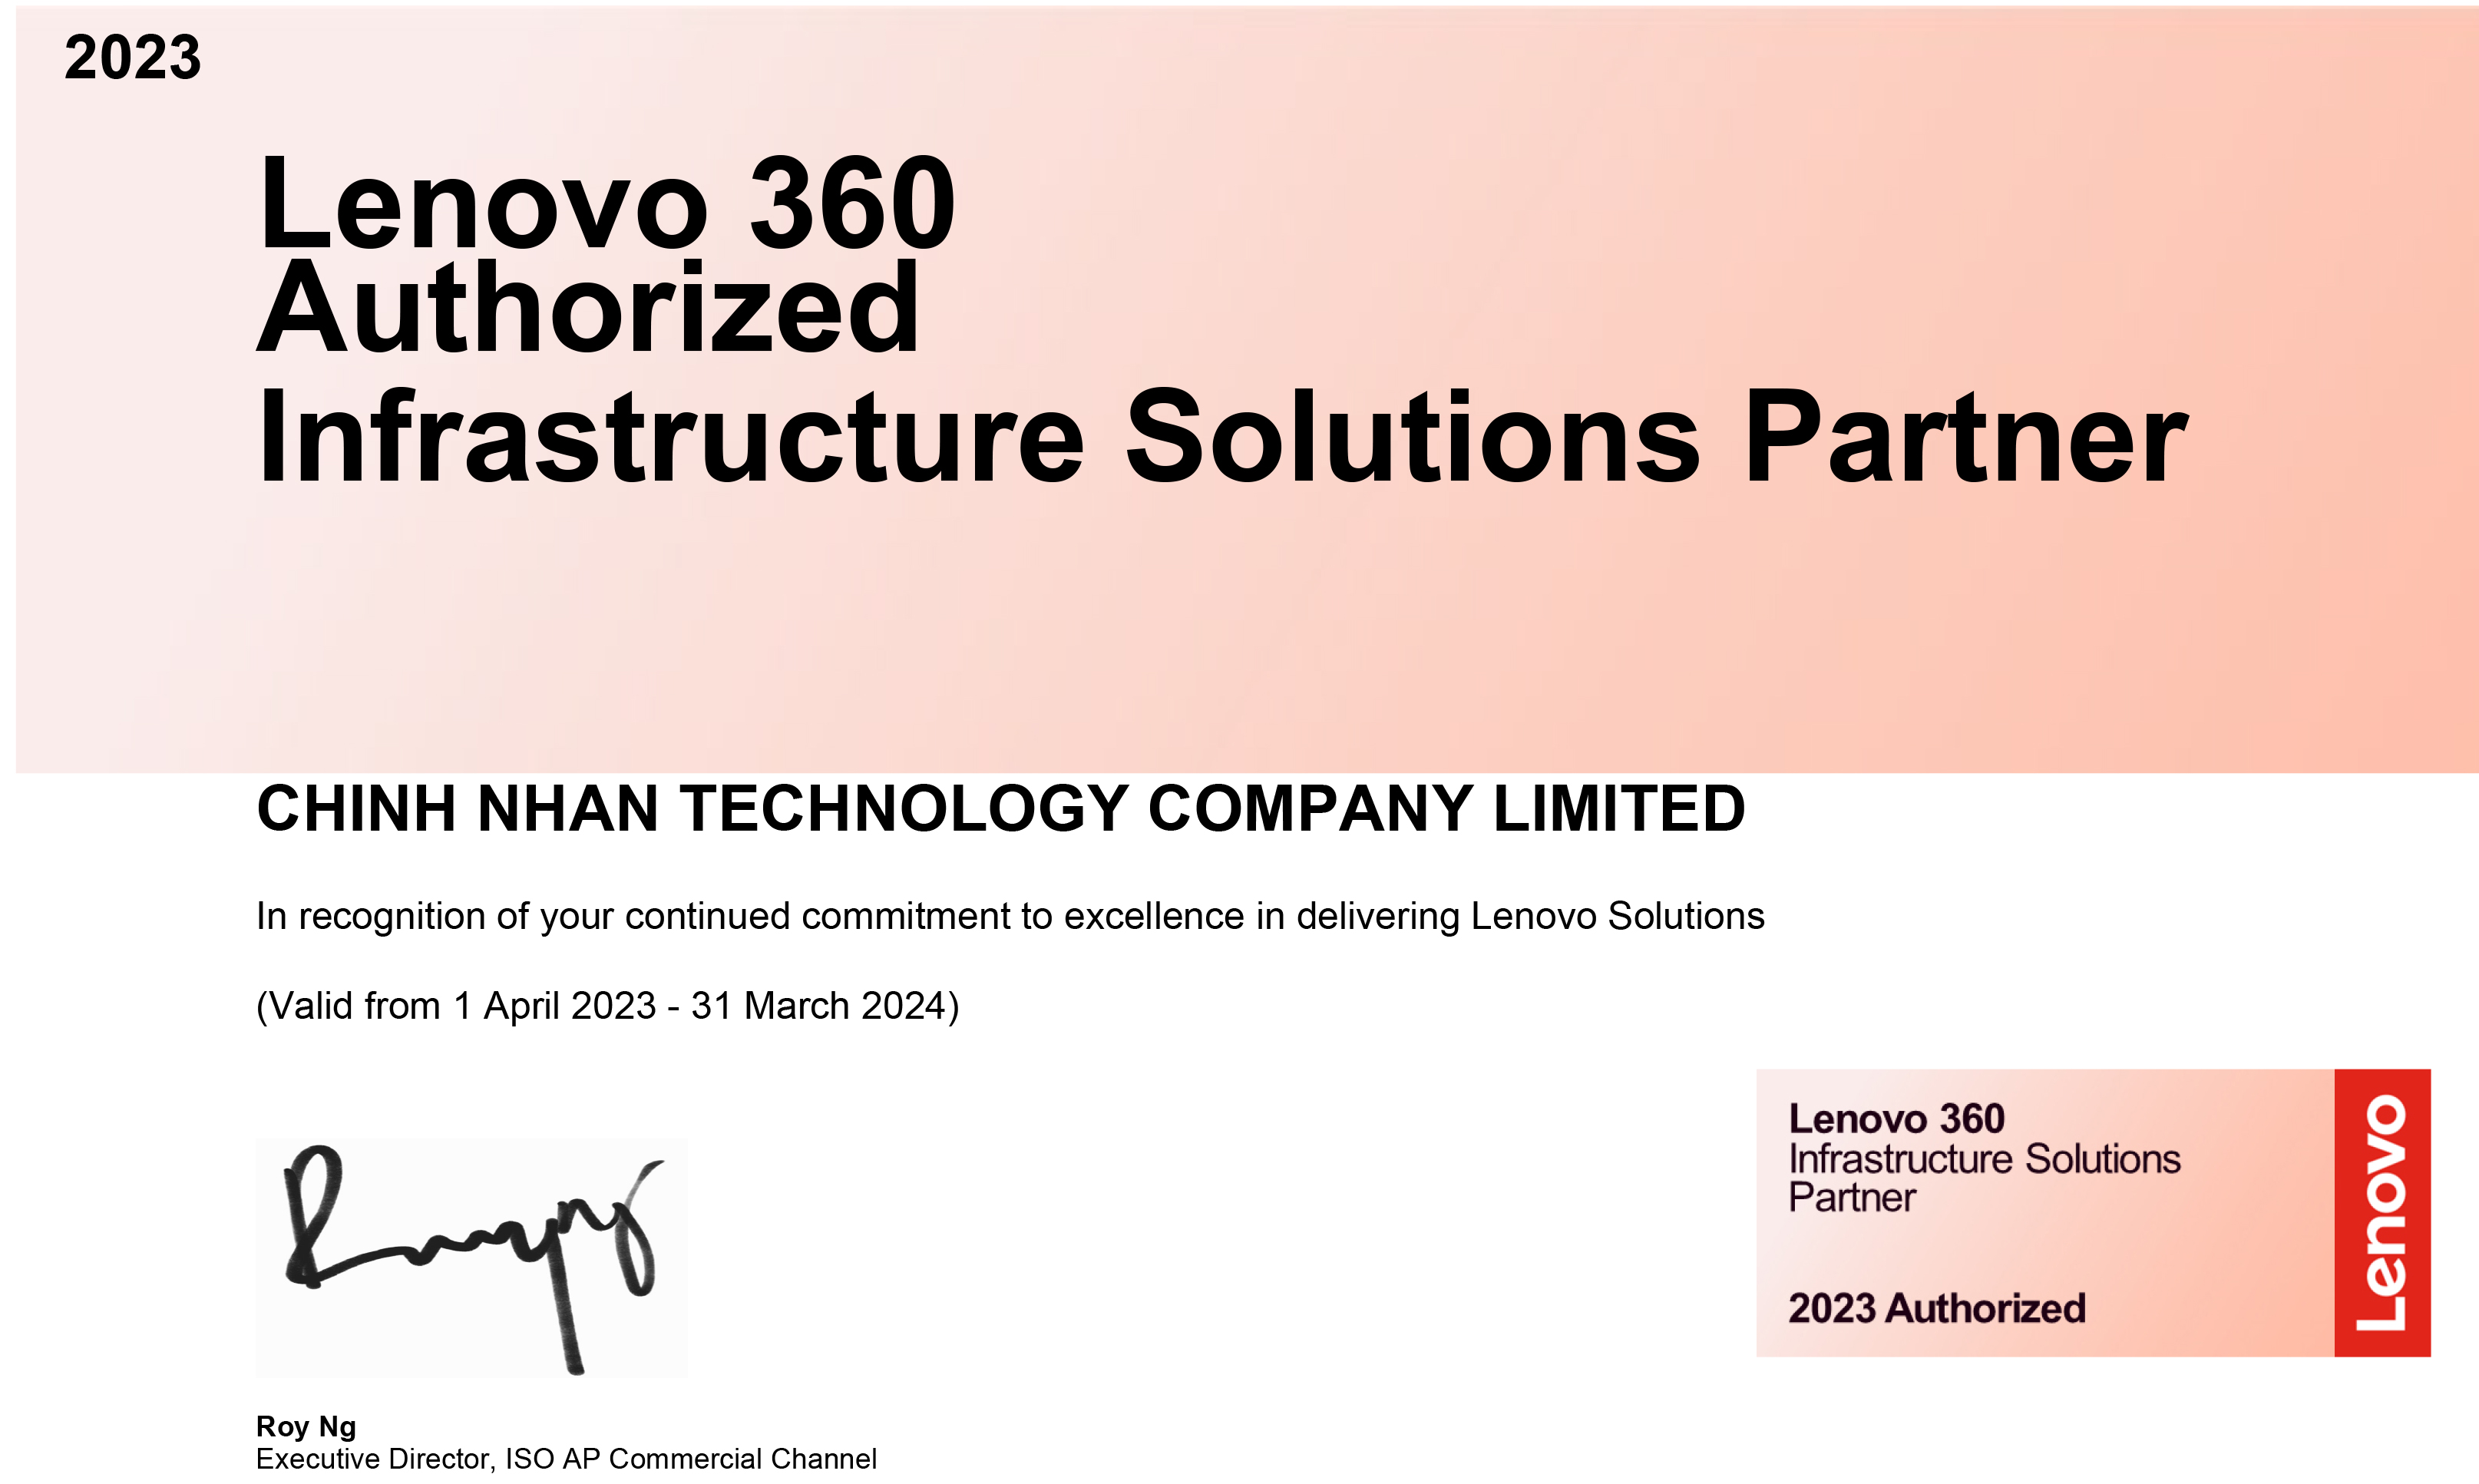 2023 - Lenovo 360 Authorized  Intelligent Devices Partner - Công Nghệ Chính Nhân